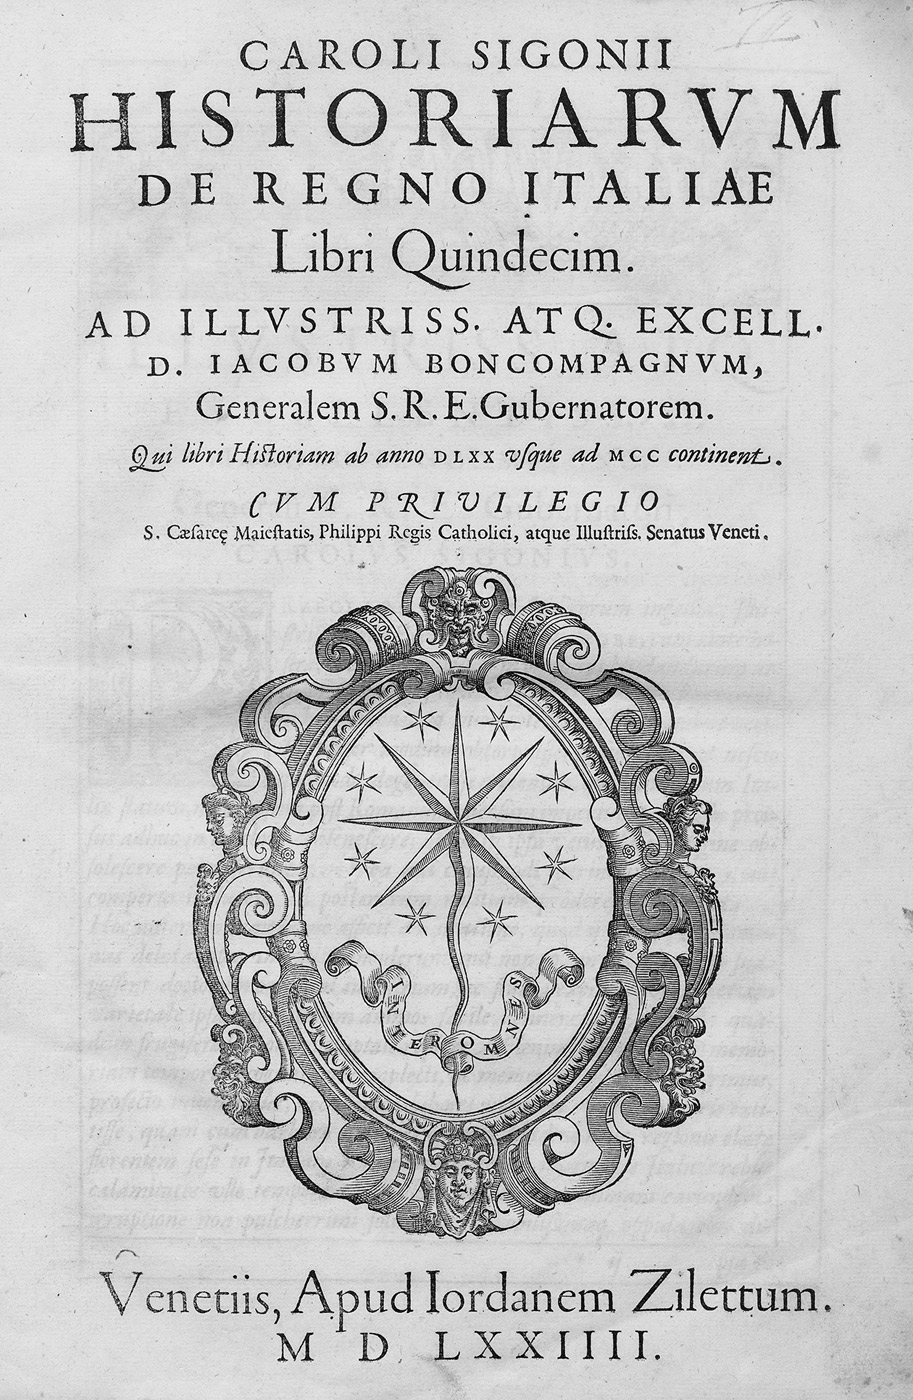 Lot 1188, Auction  115, Sigonio, Carlo, Historiarum de regno Italiae libri quindecim